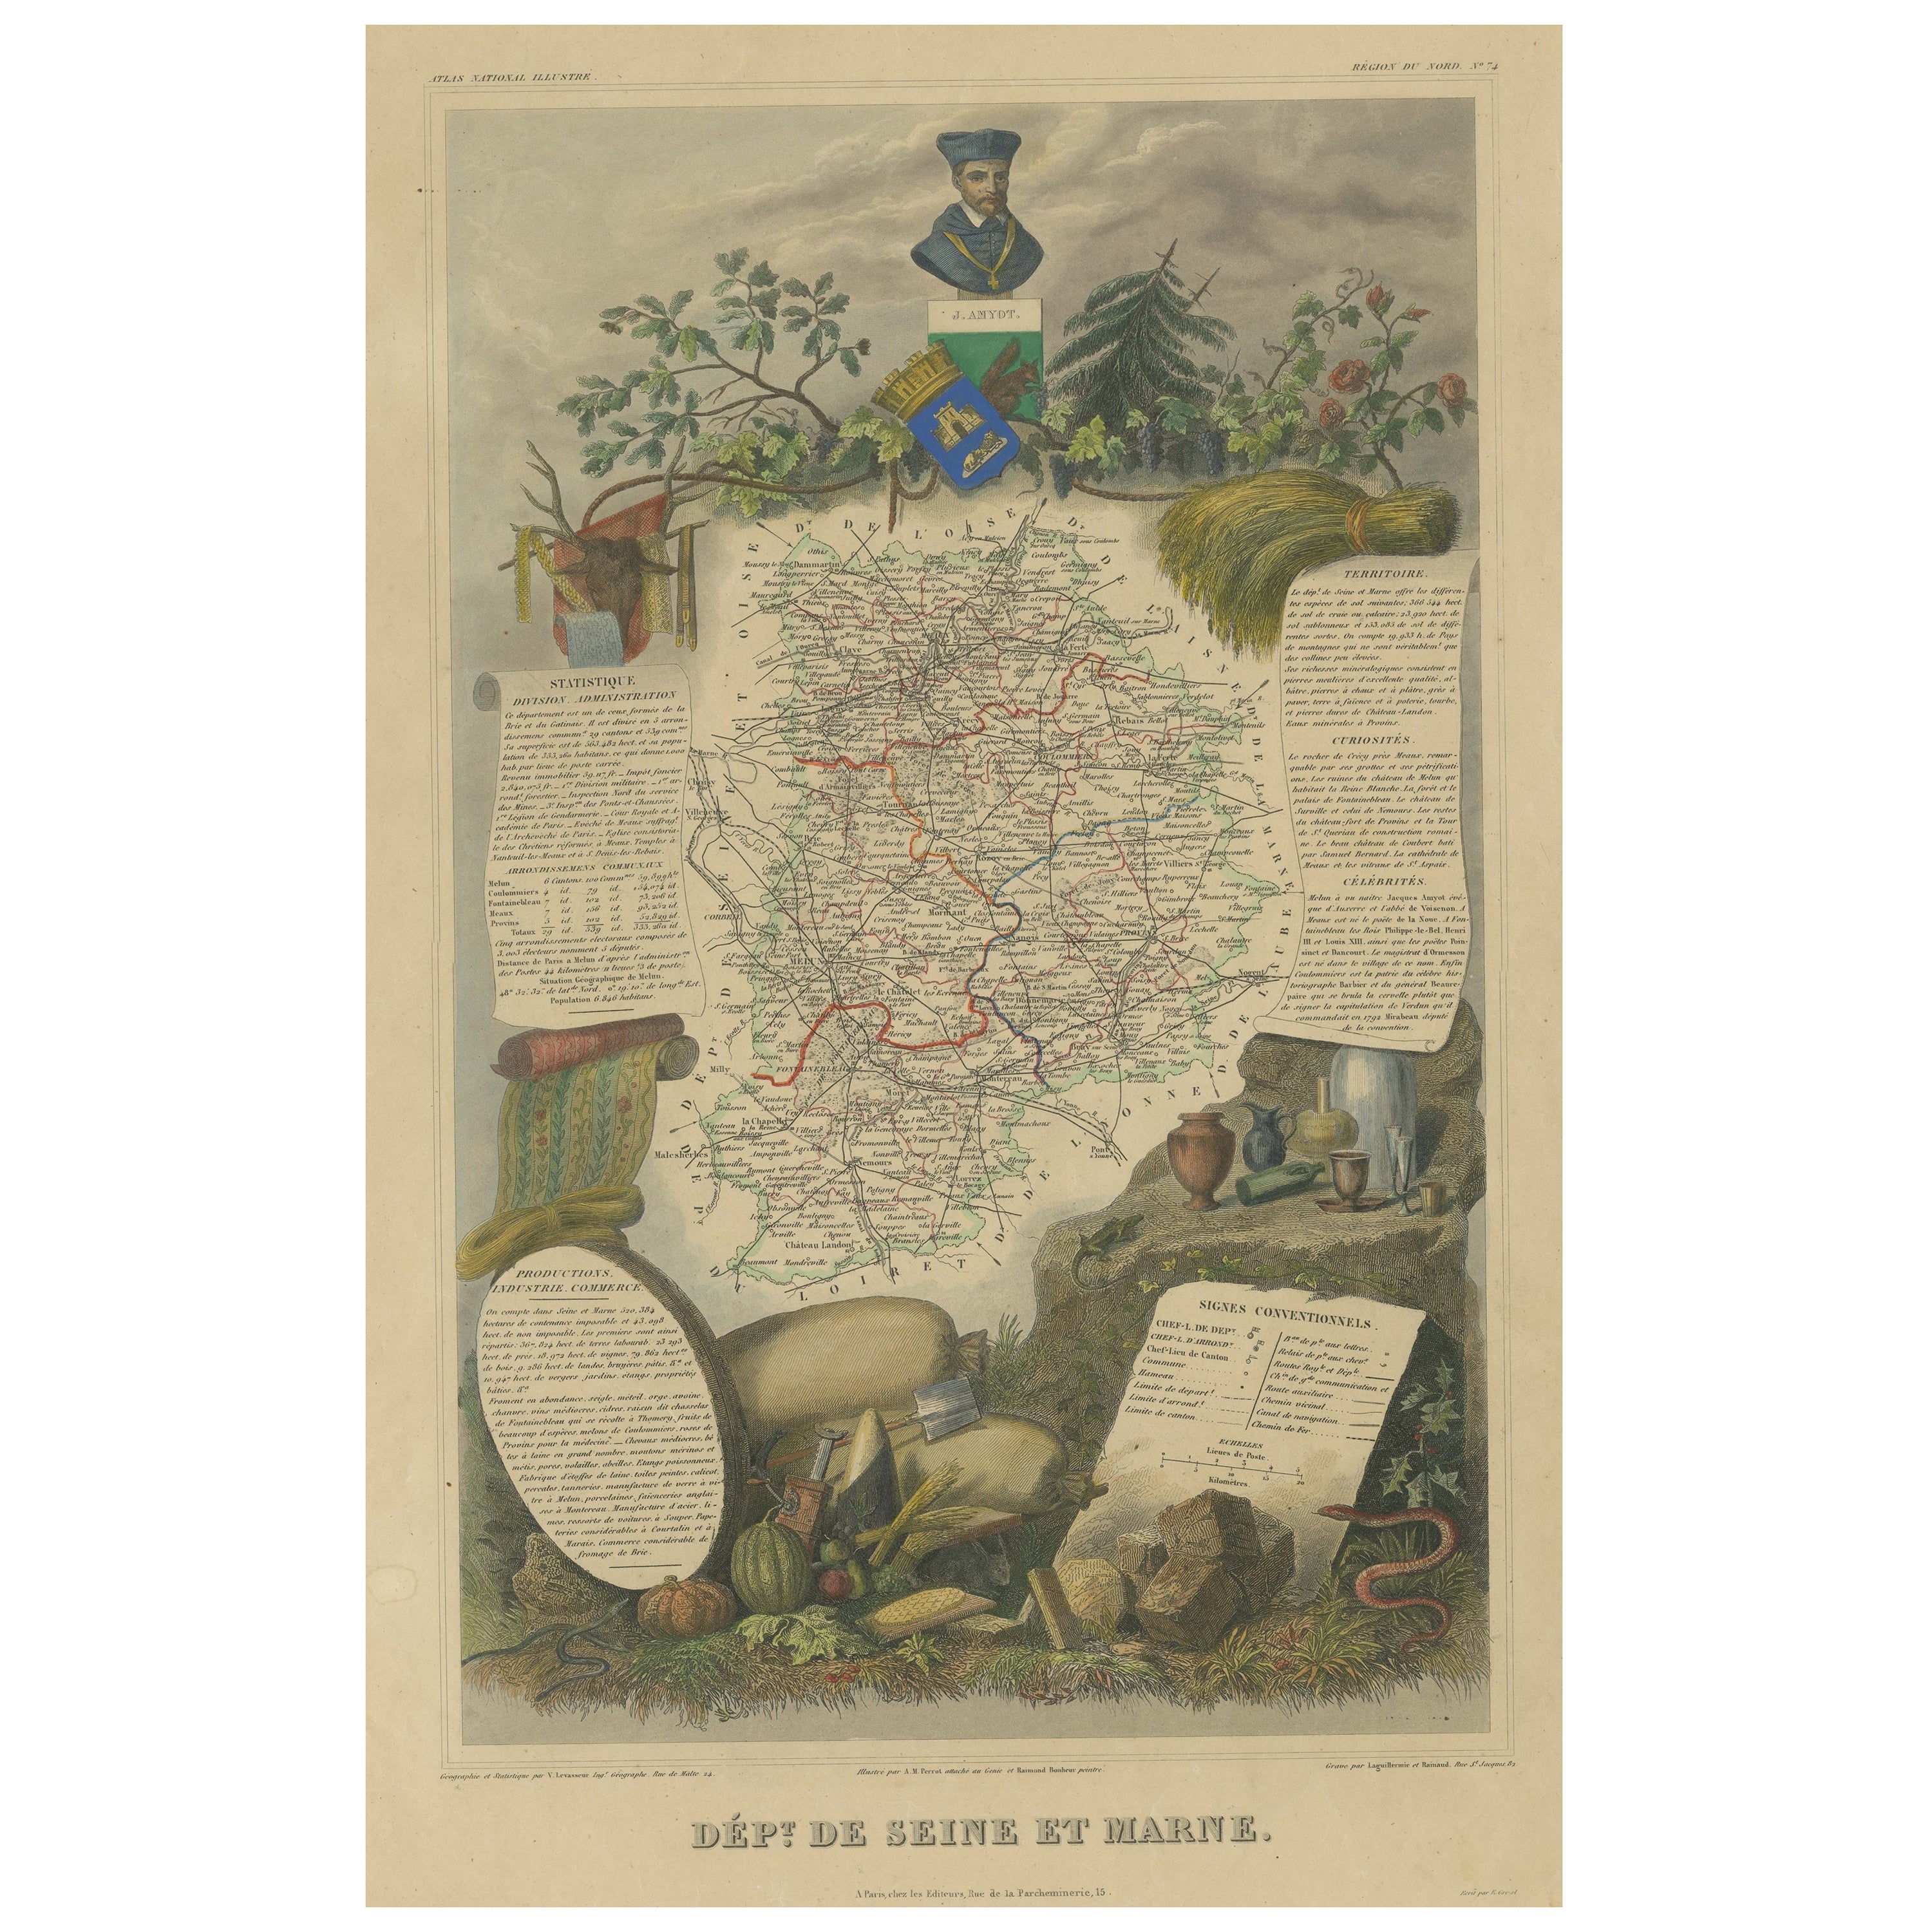 Carte ancienne colorée à la main du département de la Seine et Marne, France